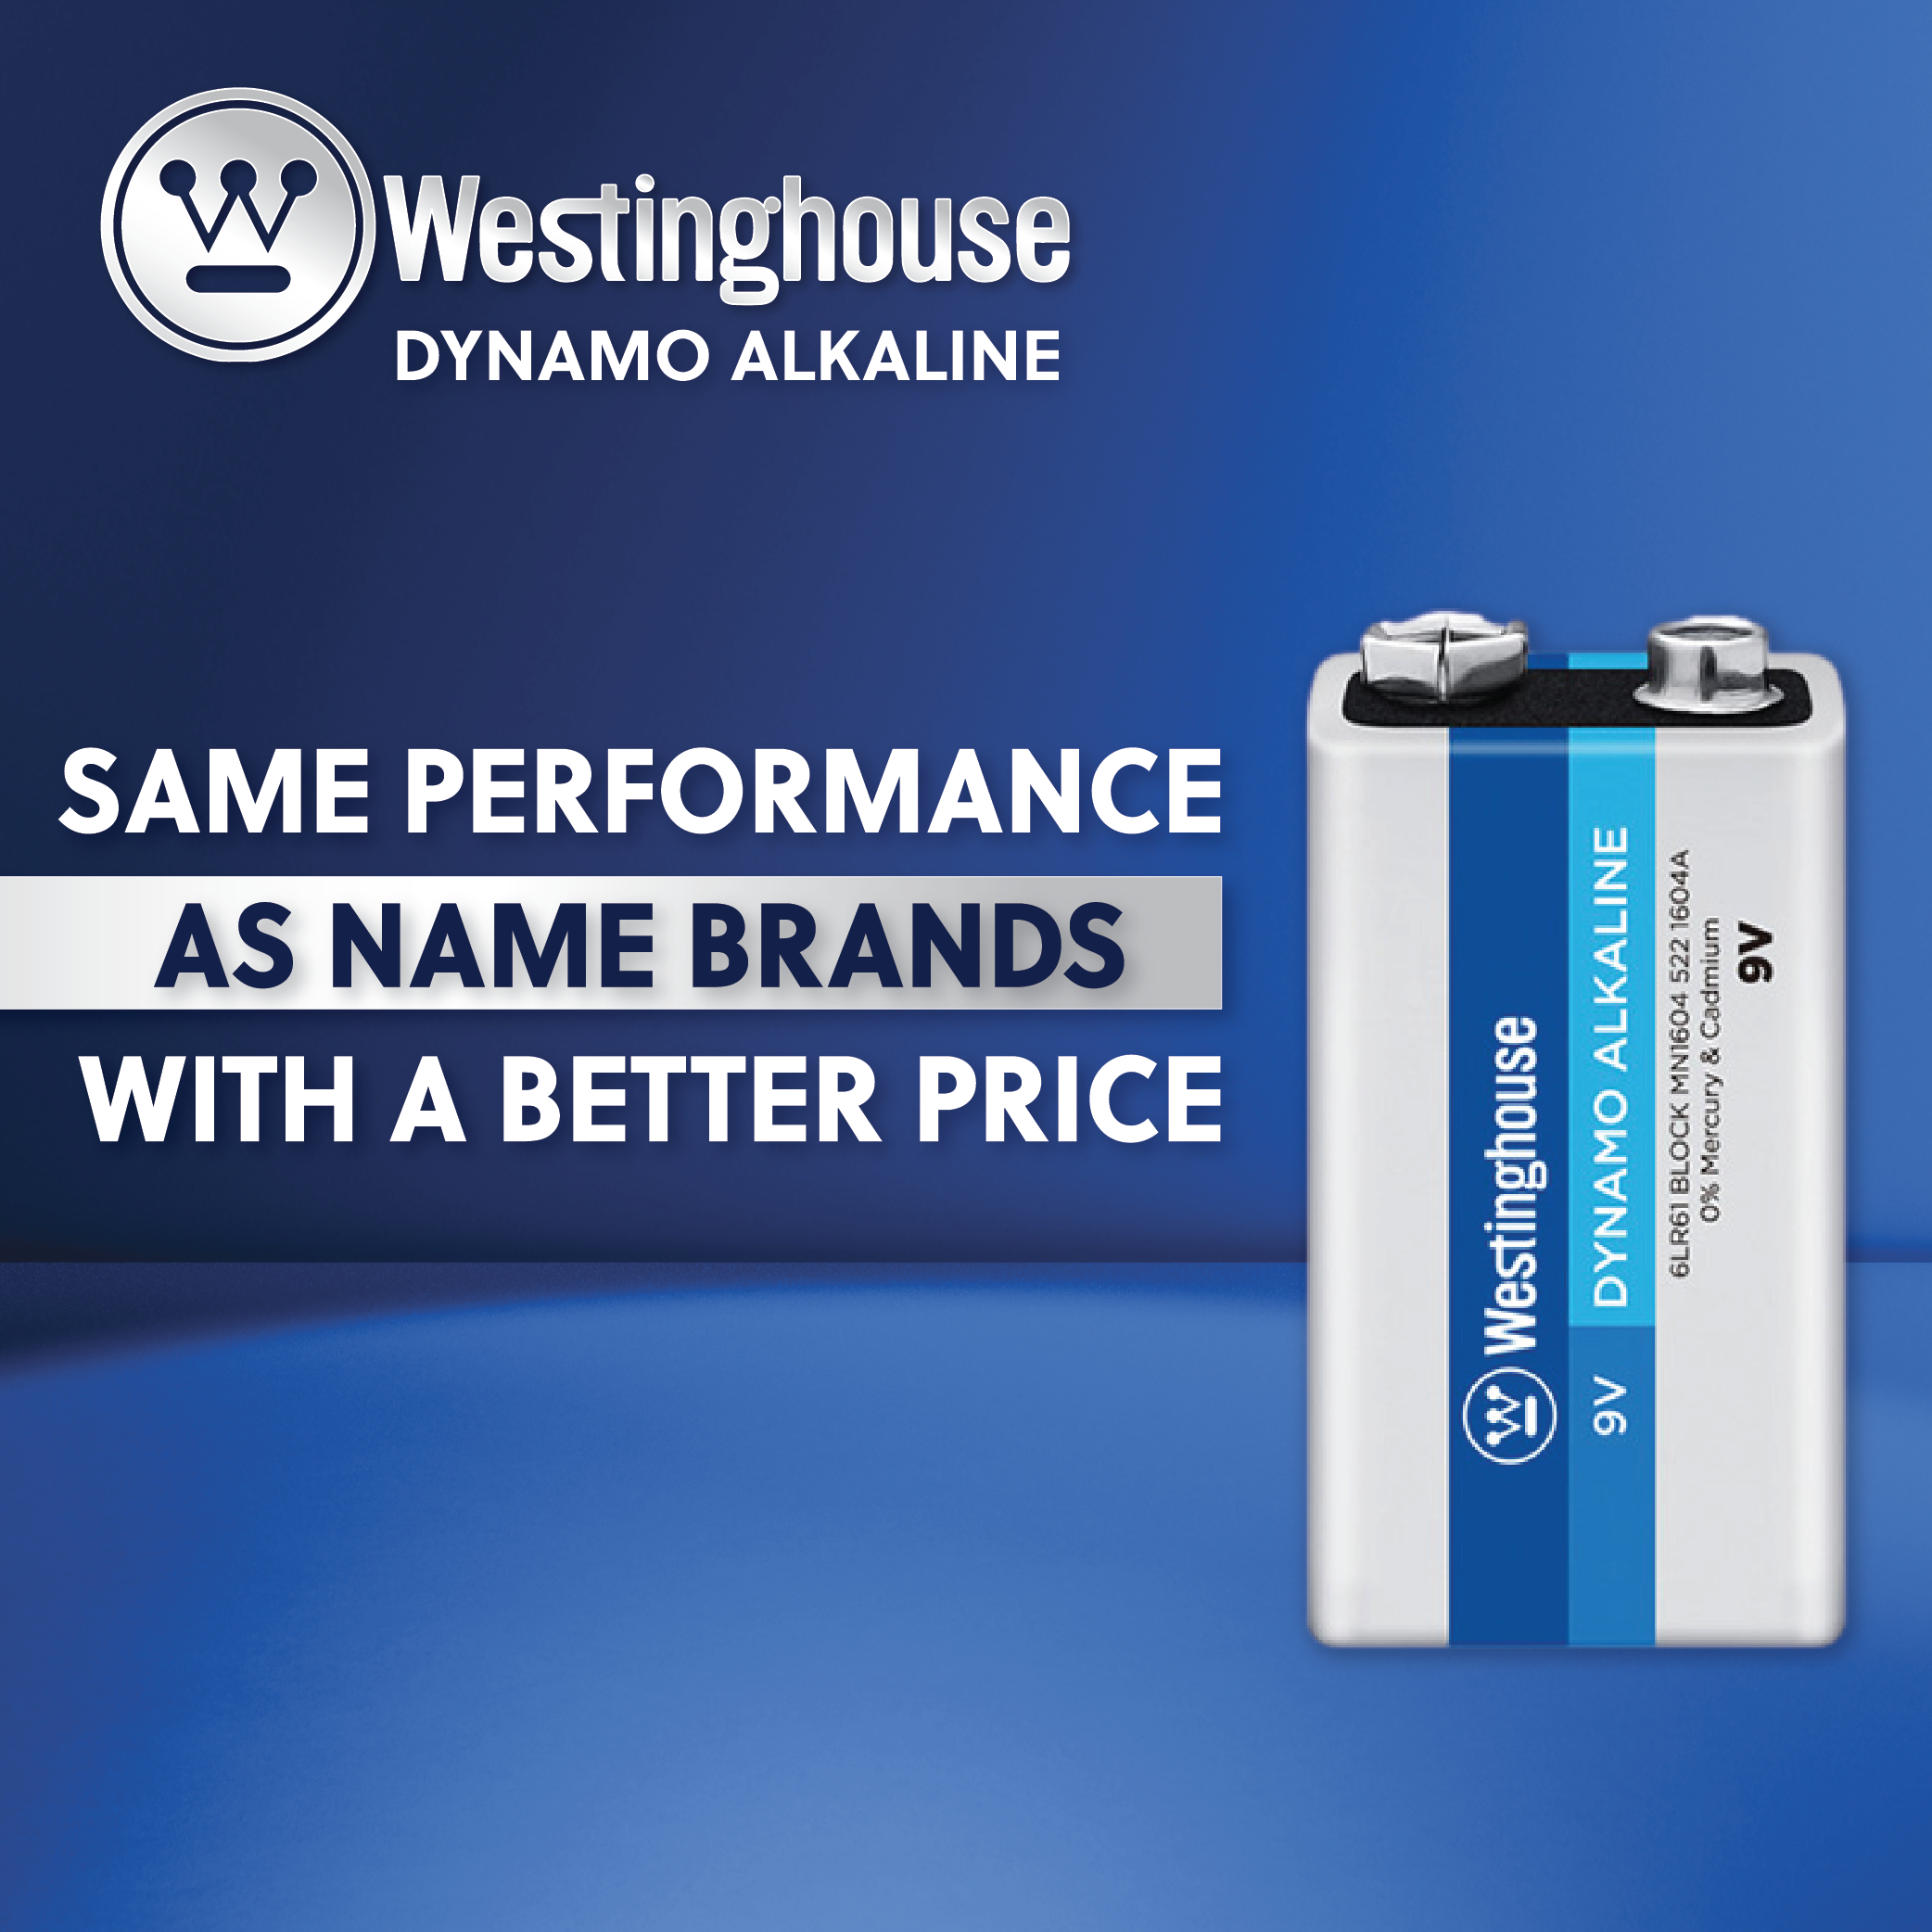 Westinghouse AAA Dynamo Alkaline Hard Plastic Case of 48